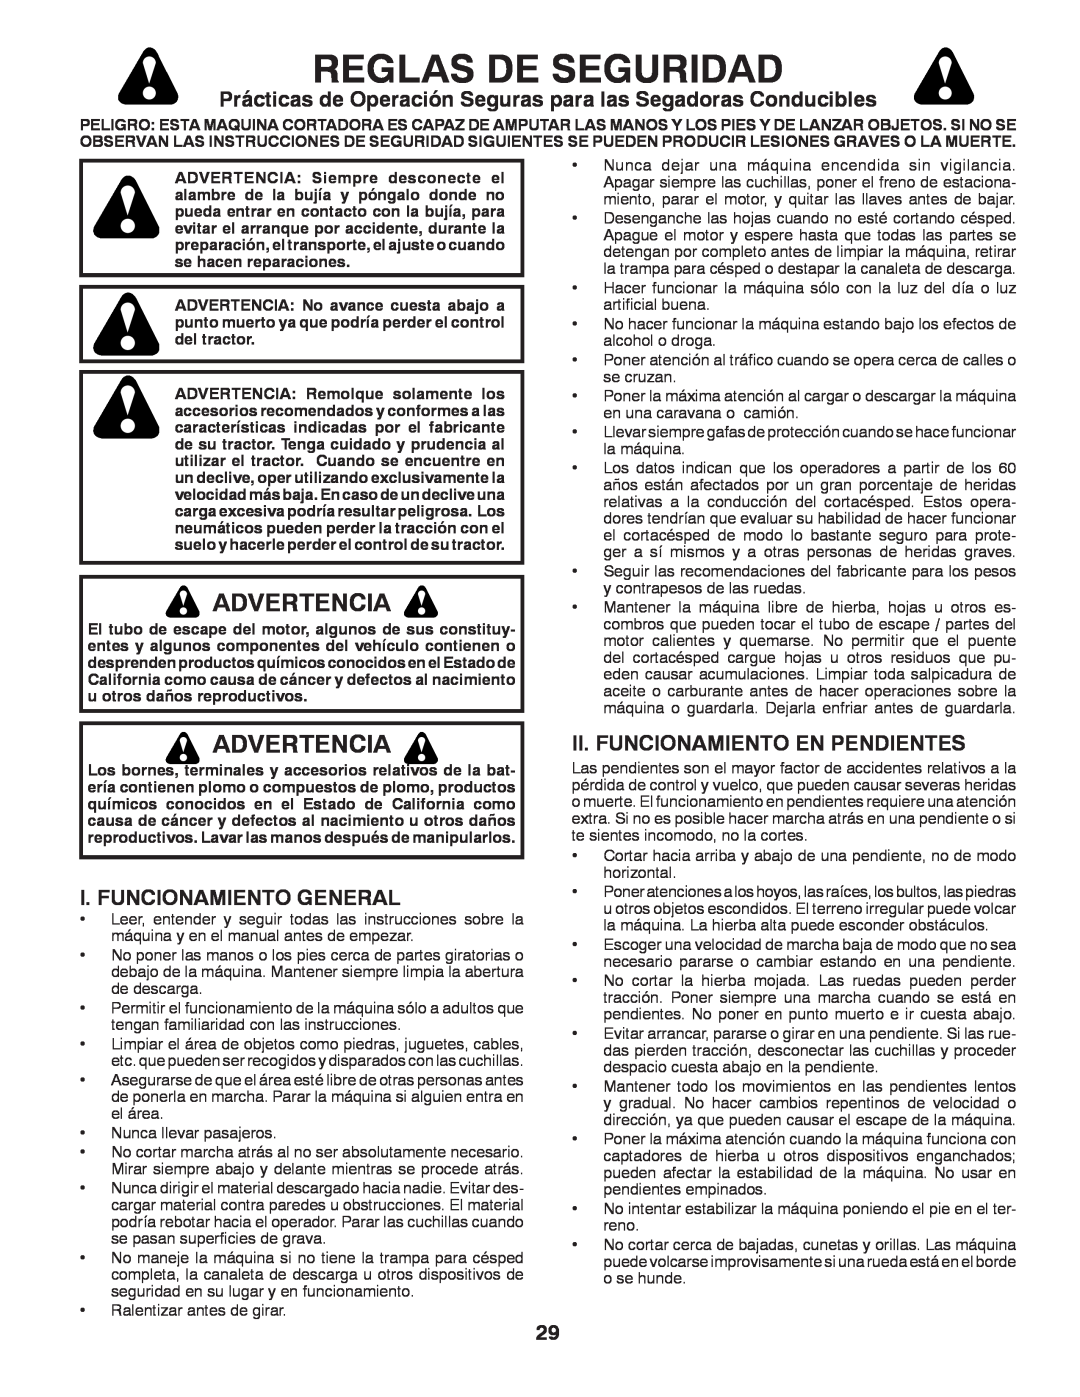 Husqvarna YTH22V42 warranty Reglas De Seguridad, Advertencia, Prácticas de Operación Seguras para las Segadoras Conducibles 